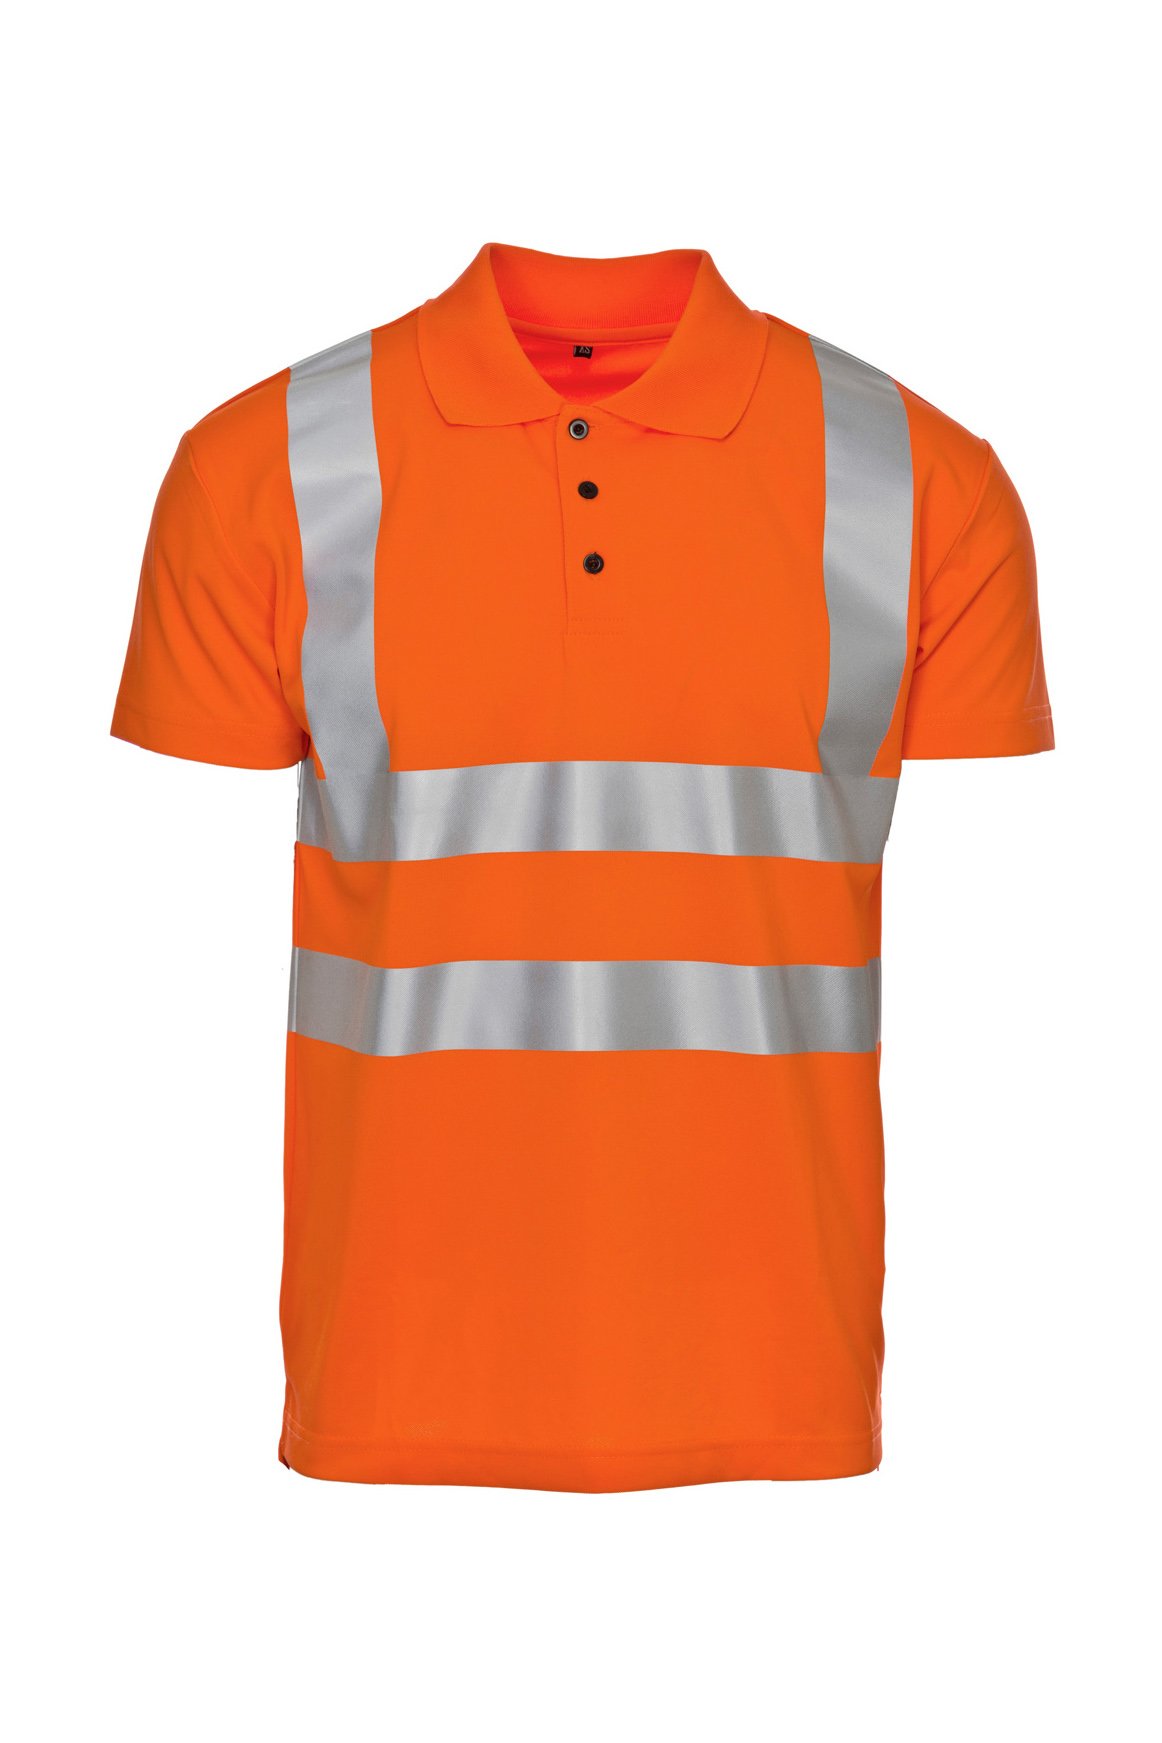 Warnschutz-Poloshirt, fluorescent lemon, ISO 20471 Kl. 2